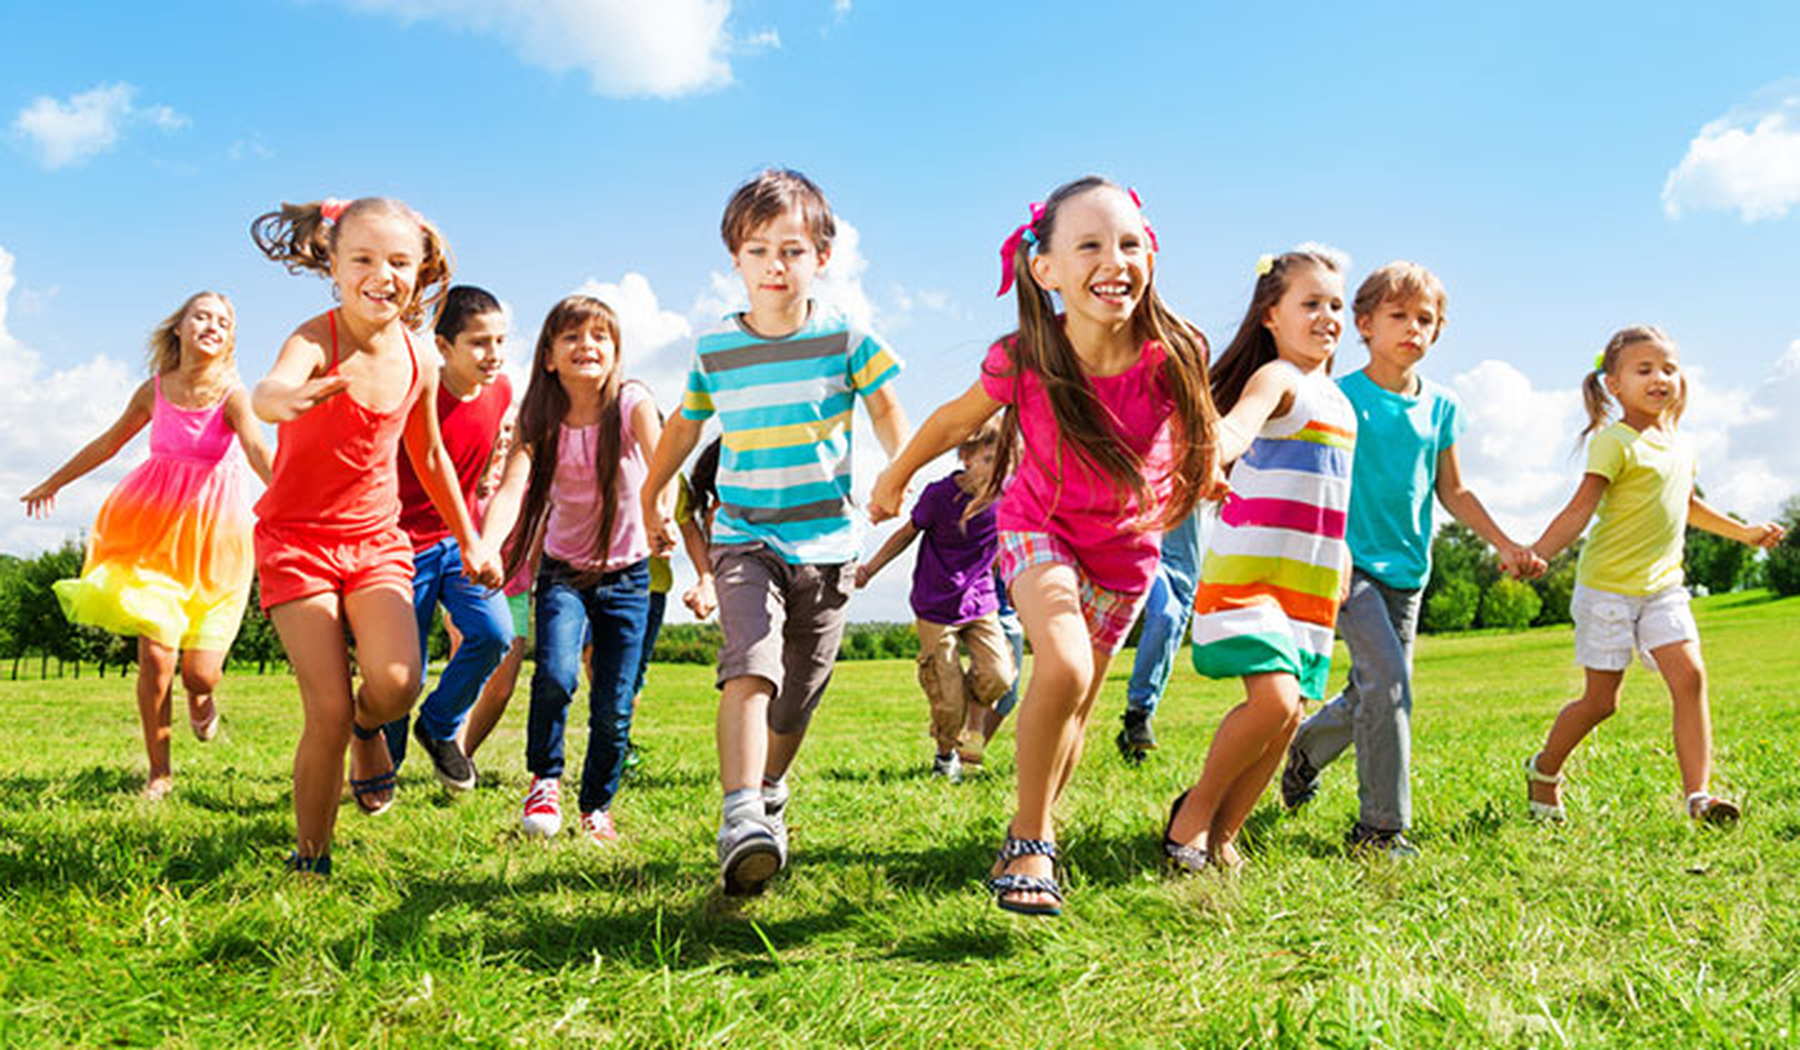 Happy kids running outside in a green field